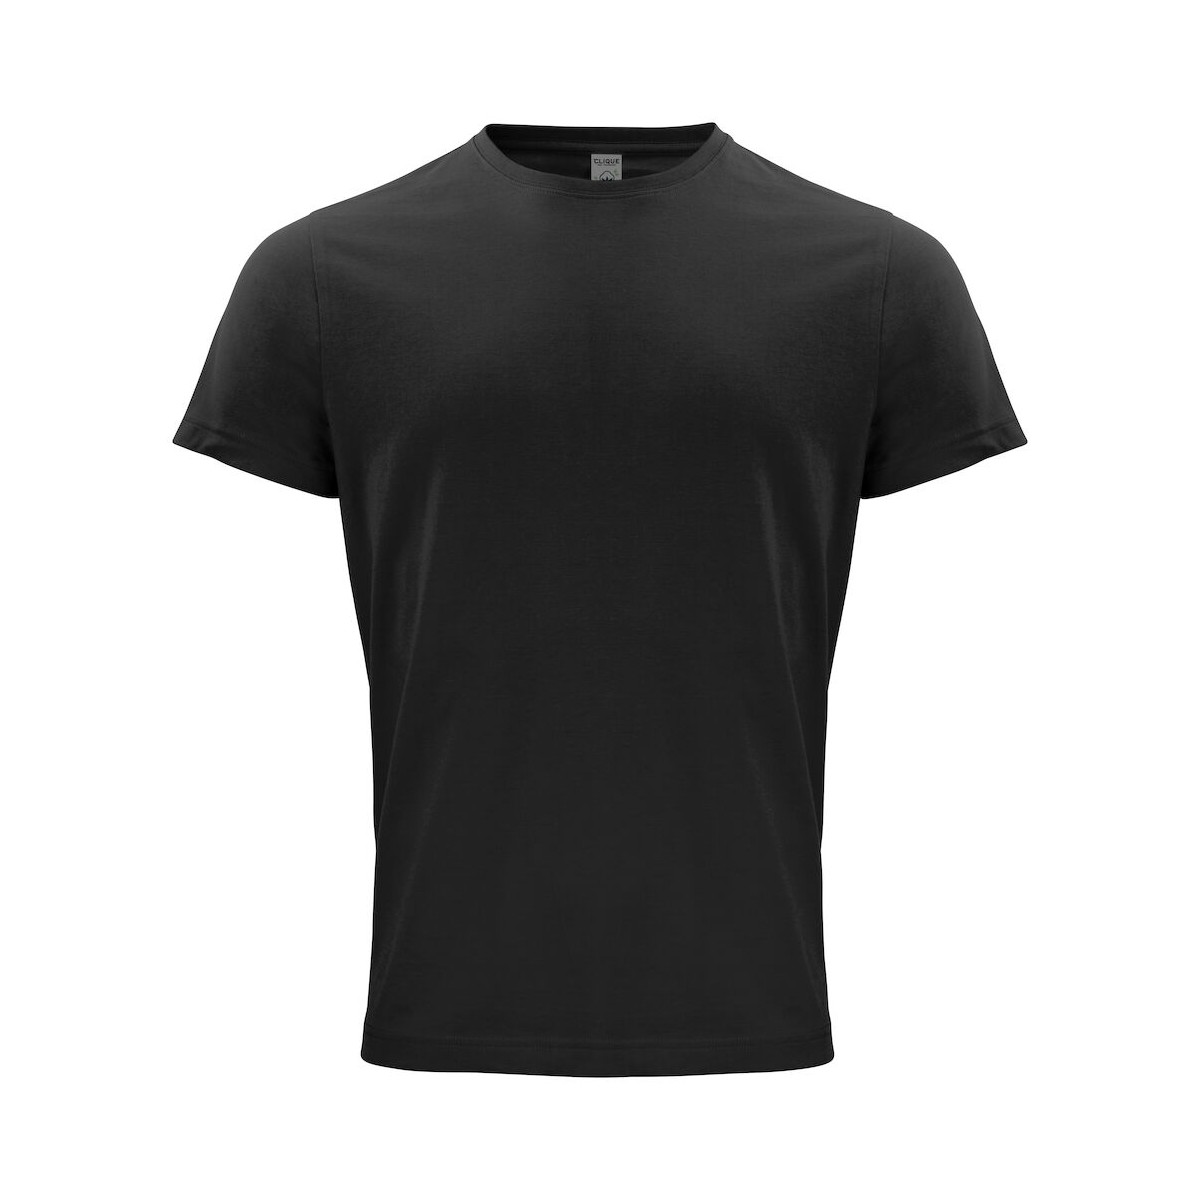 t-shirt 100% coton biologique - CLIQUE - Coupe homme - Couleur noir - Personnalisable en petite quantité